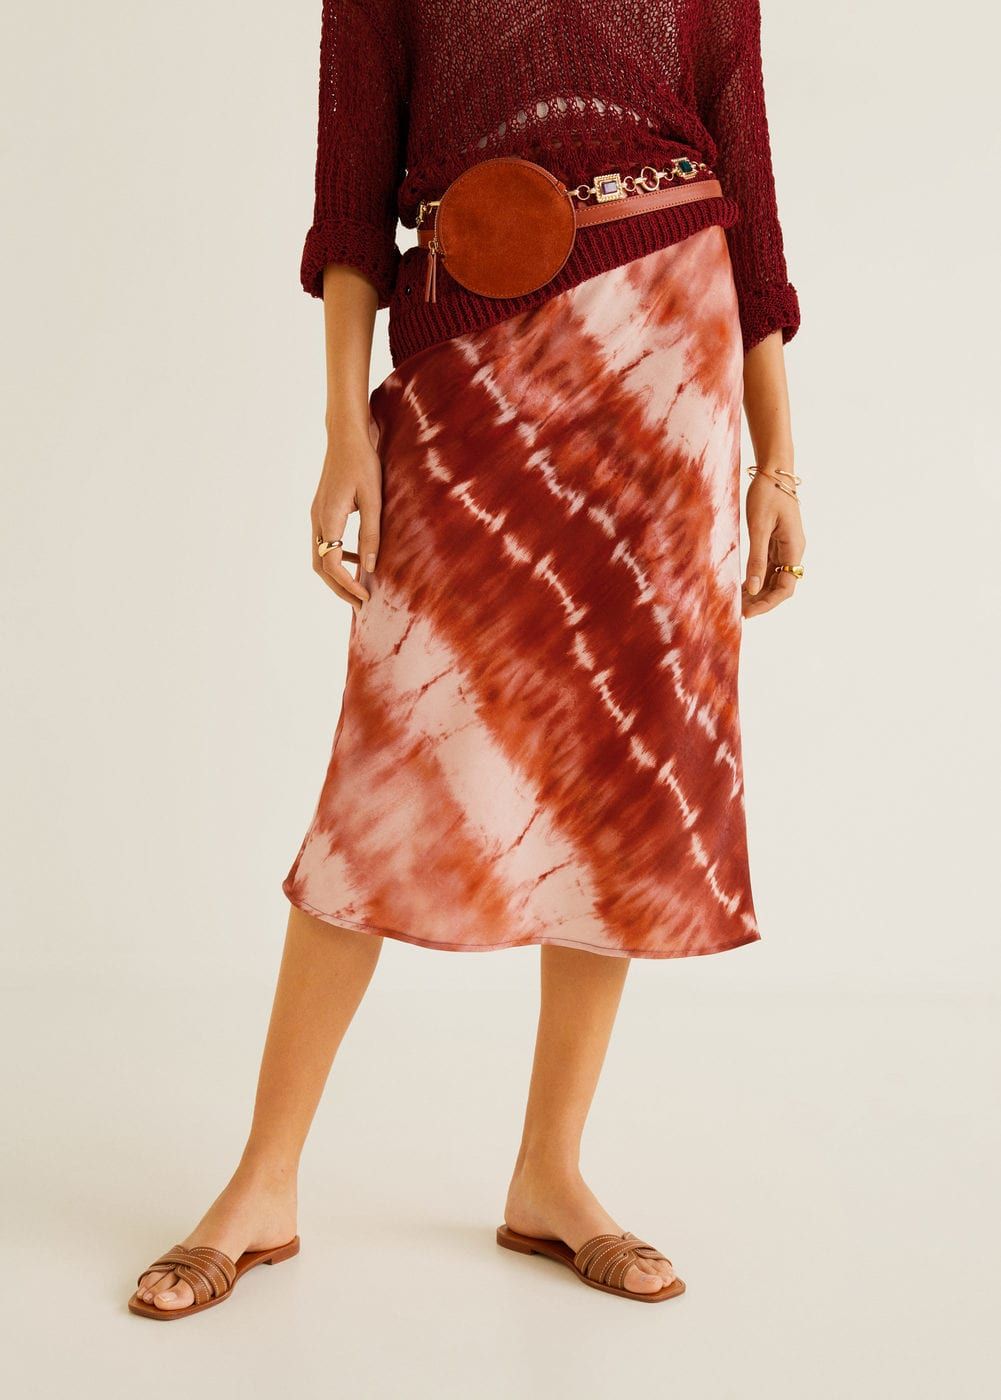 Esta falda de estampado tie-dye de Mango (de 36 euros) promete convertirse en un 'must have' verano - La falda de Mango con estampado tie-dye y menos de 36 que